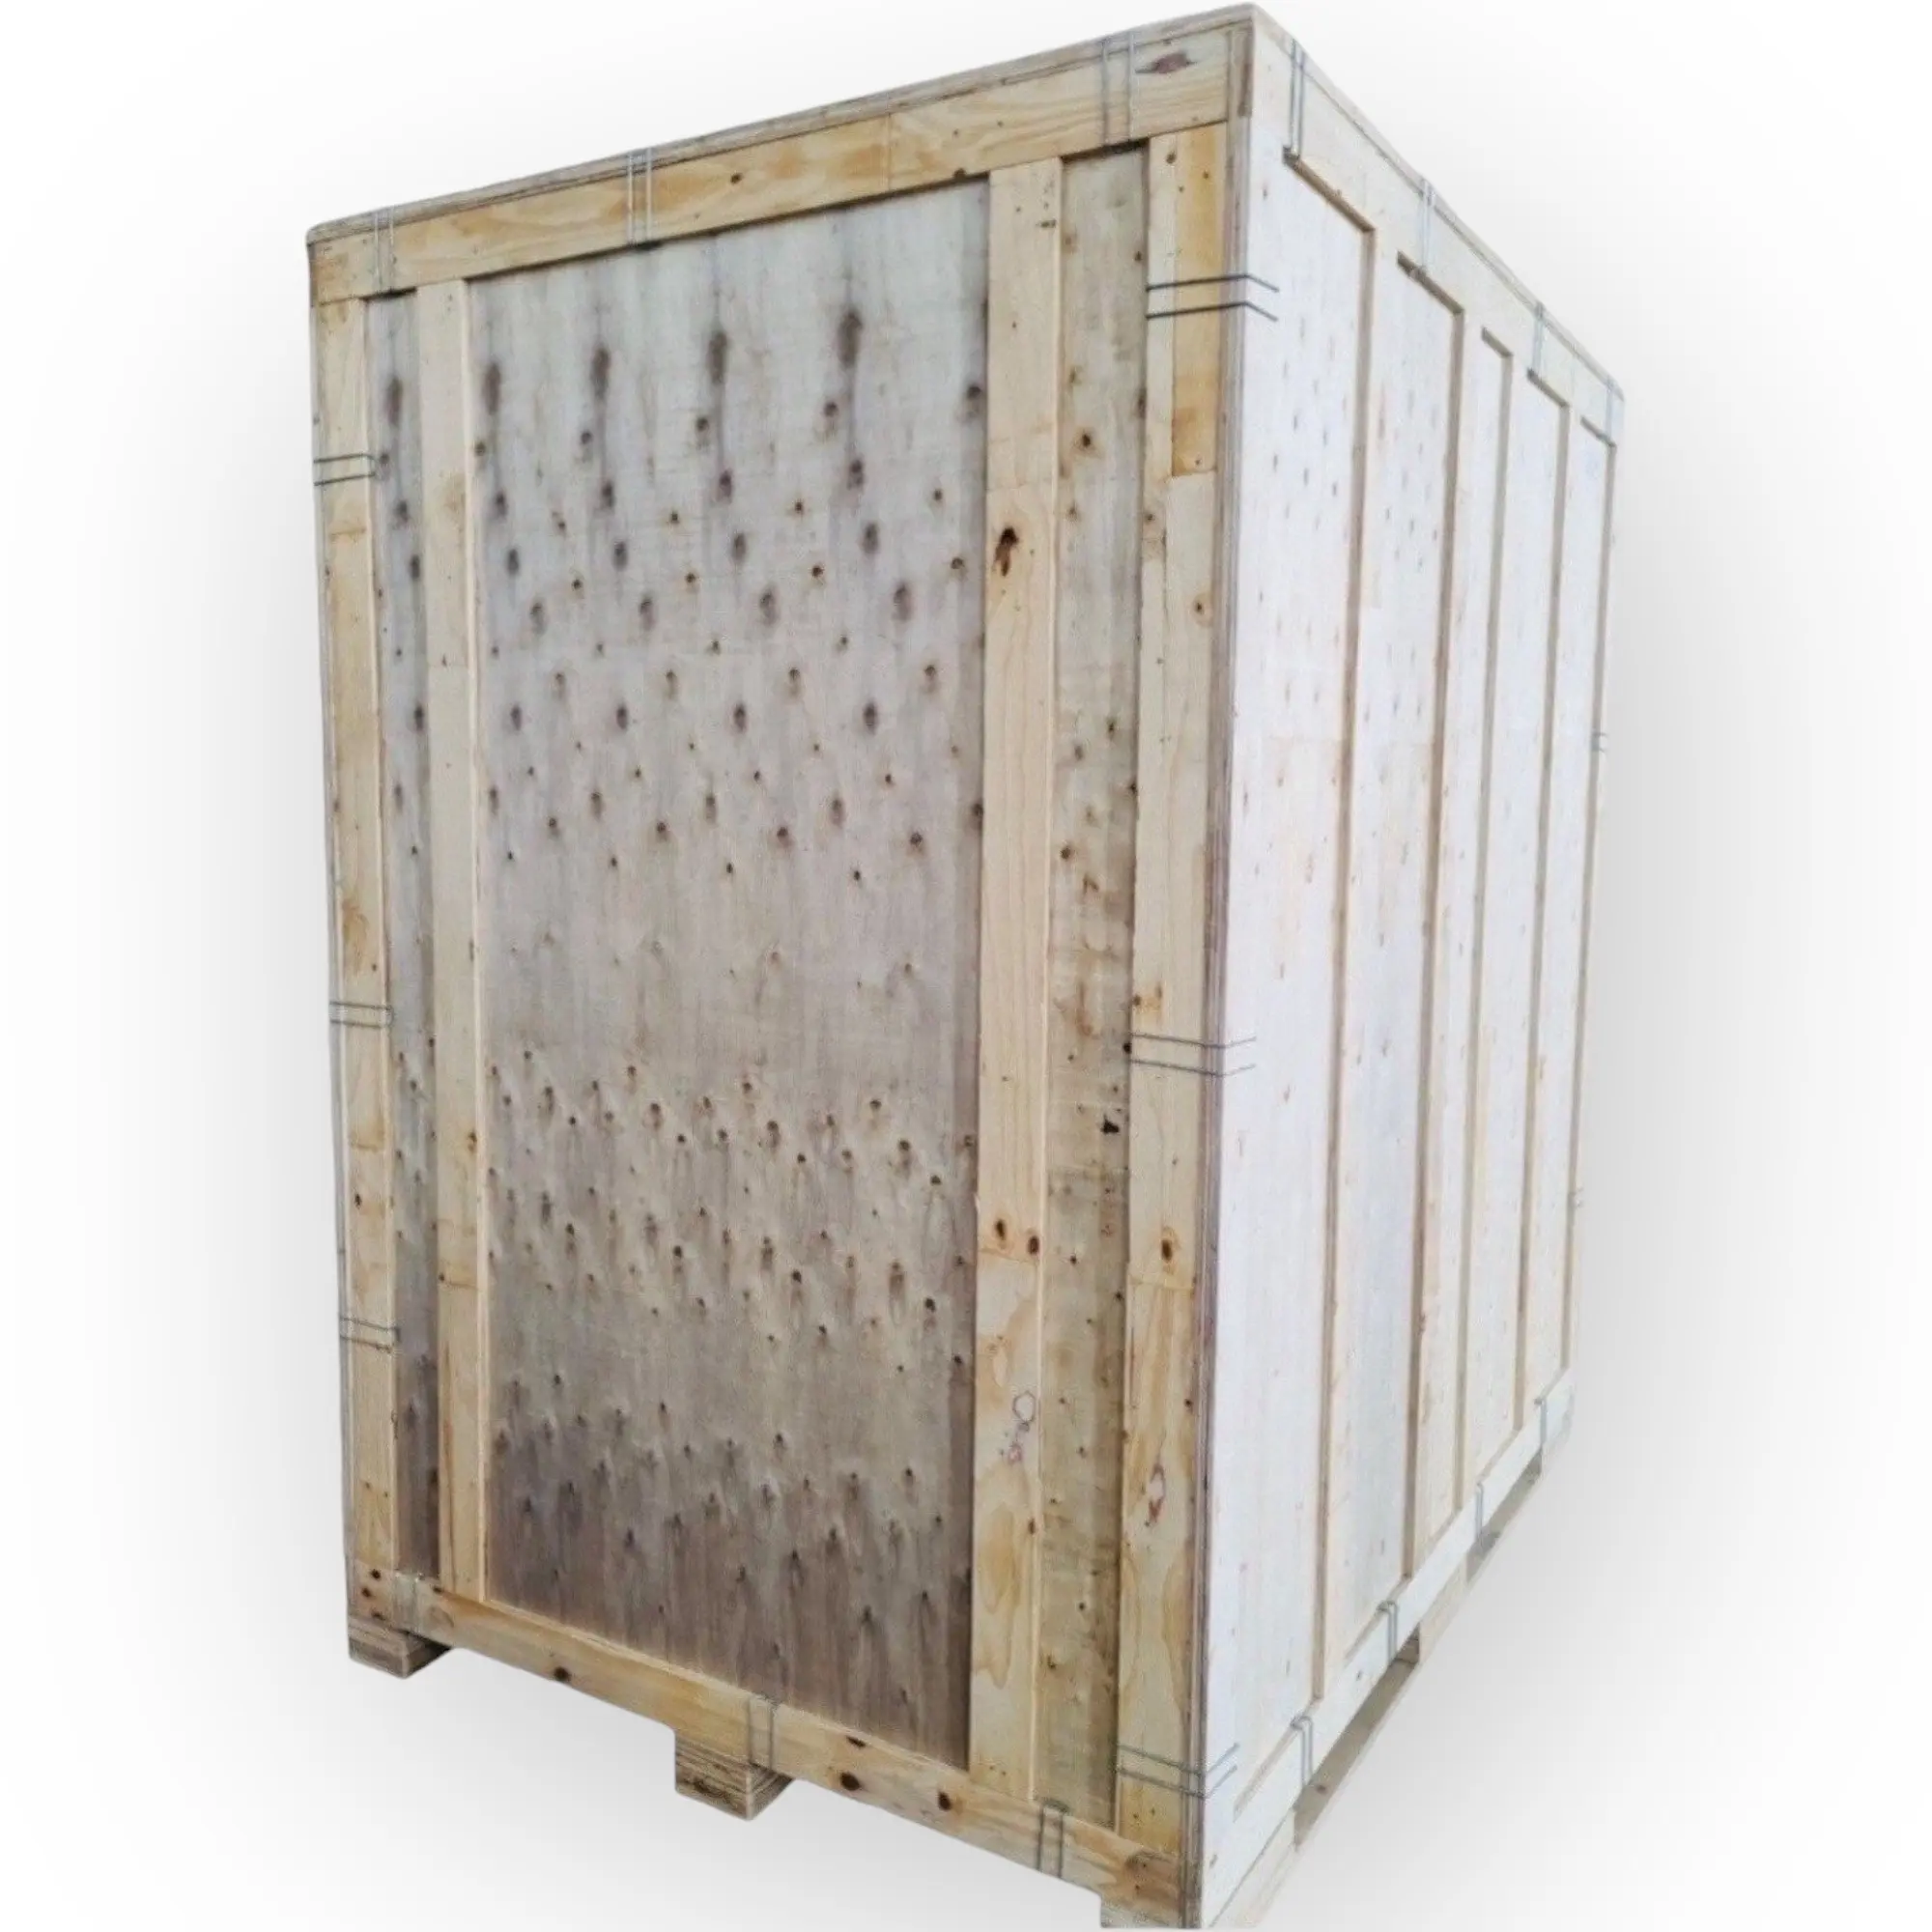 Vente en gros boîtes de rangement en contreplaqué pliables personnalisées pour marchandises caisses en bois contreplaqué pour l'expédition depuis le Vietnam